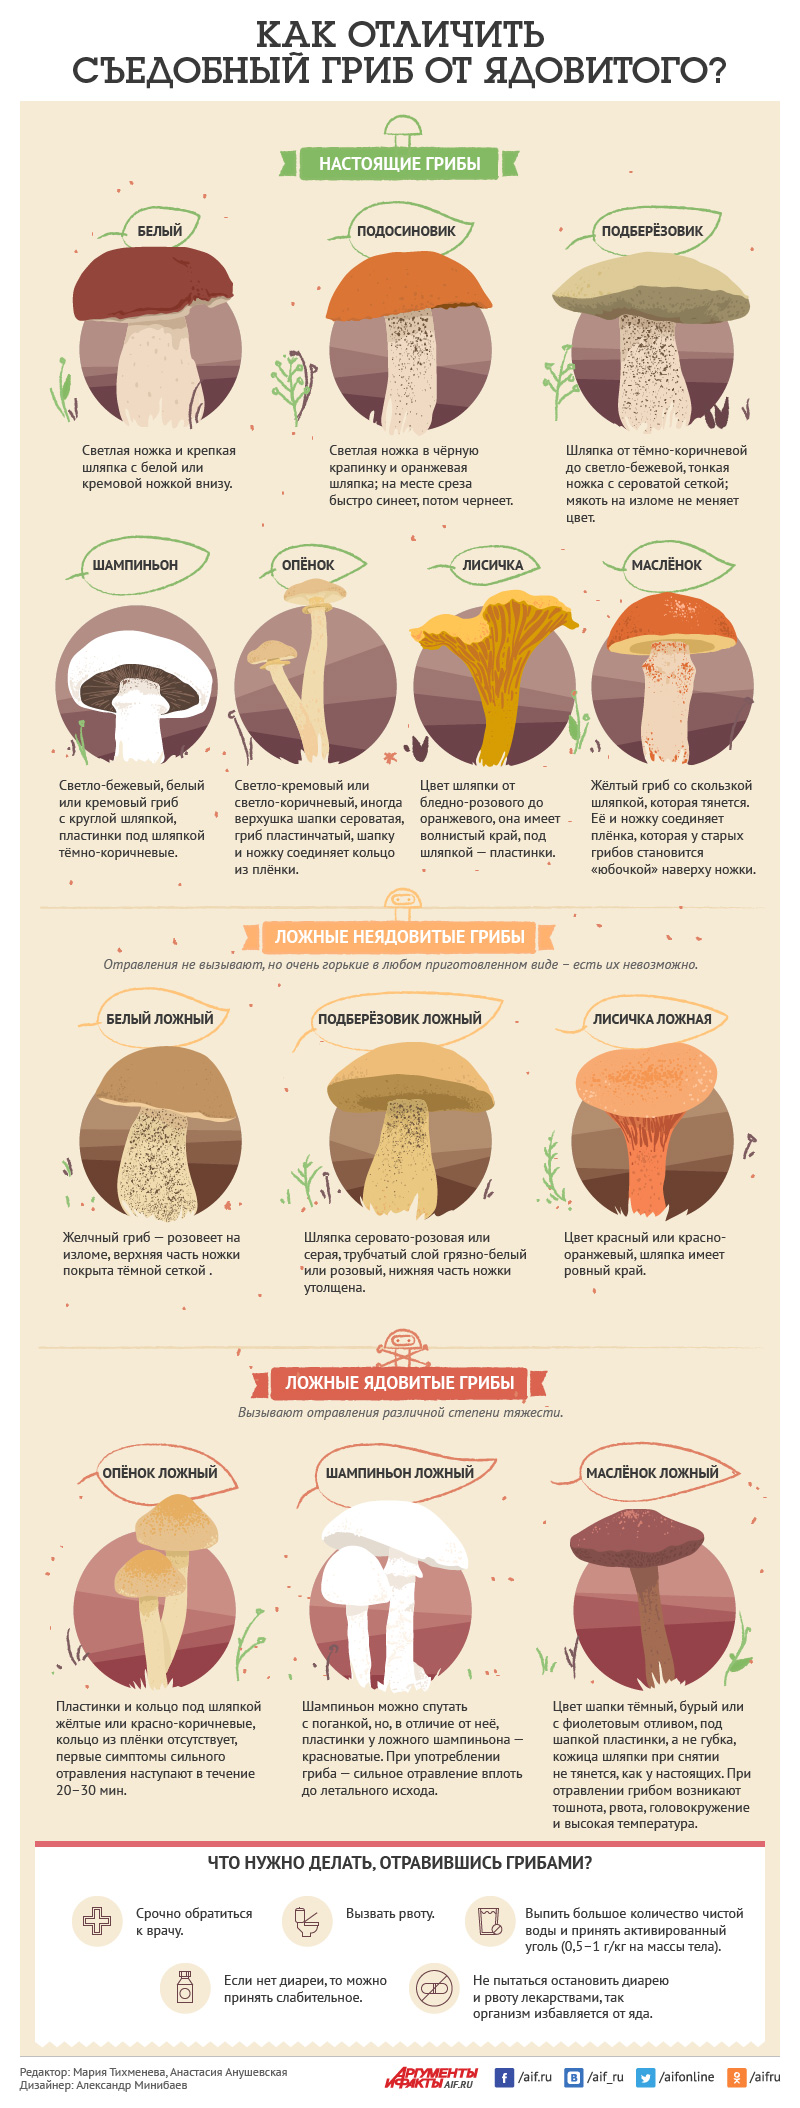 Как отличить съедобный гриб от ядовитого